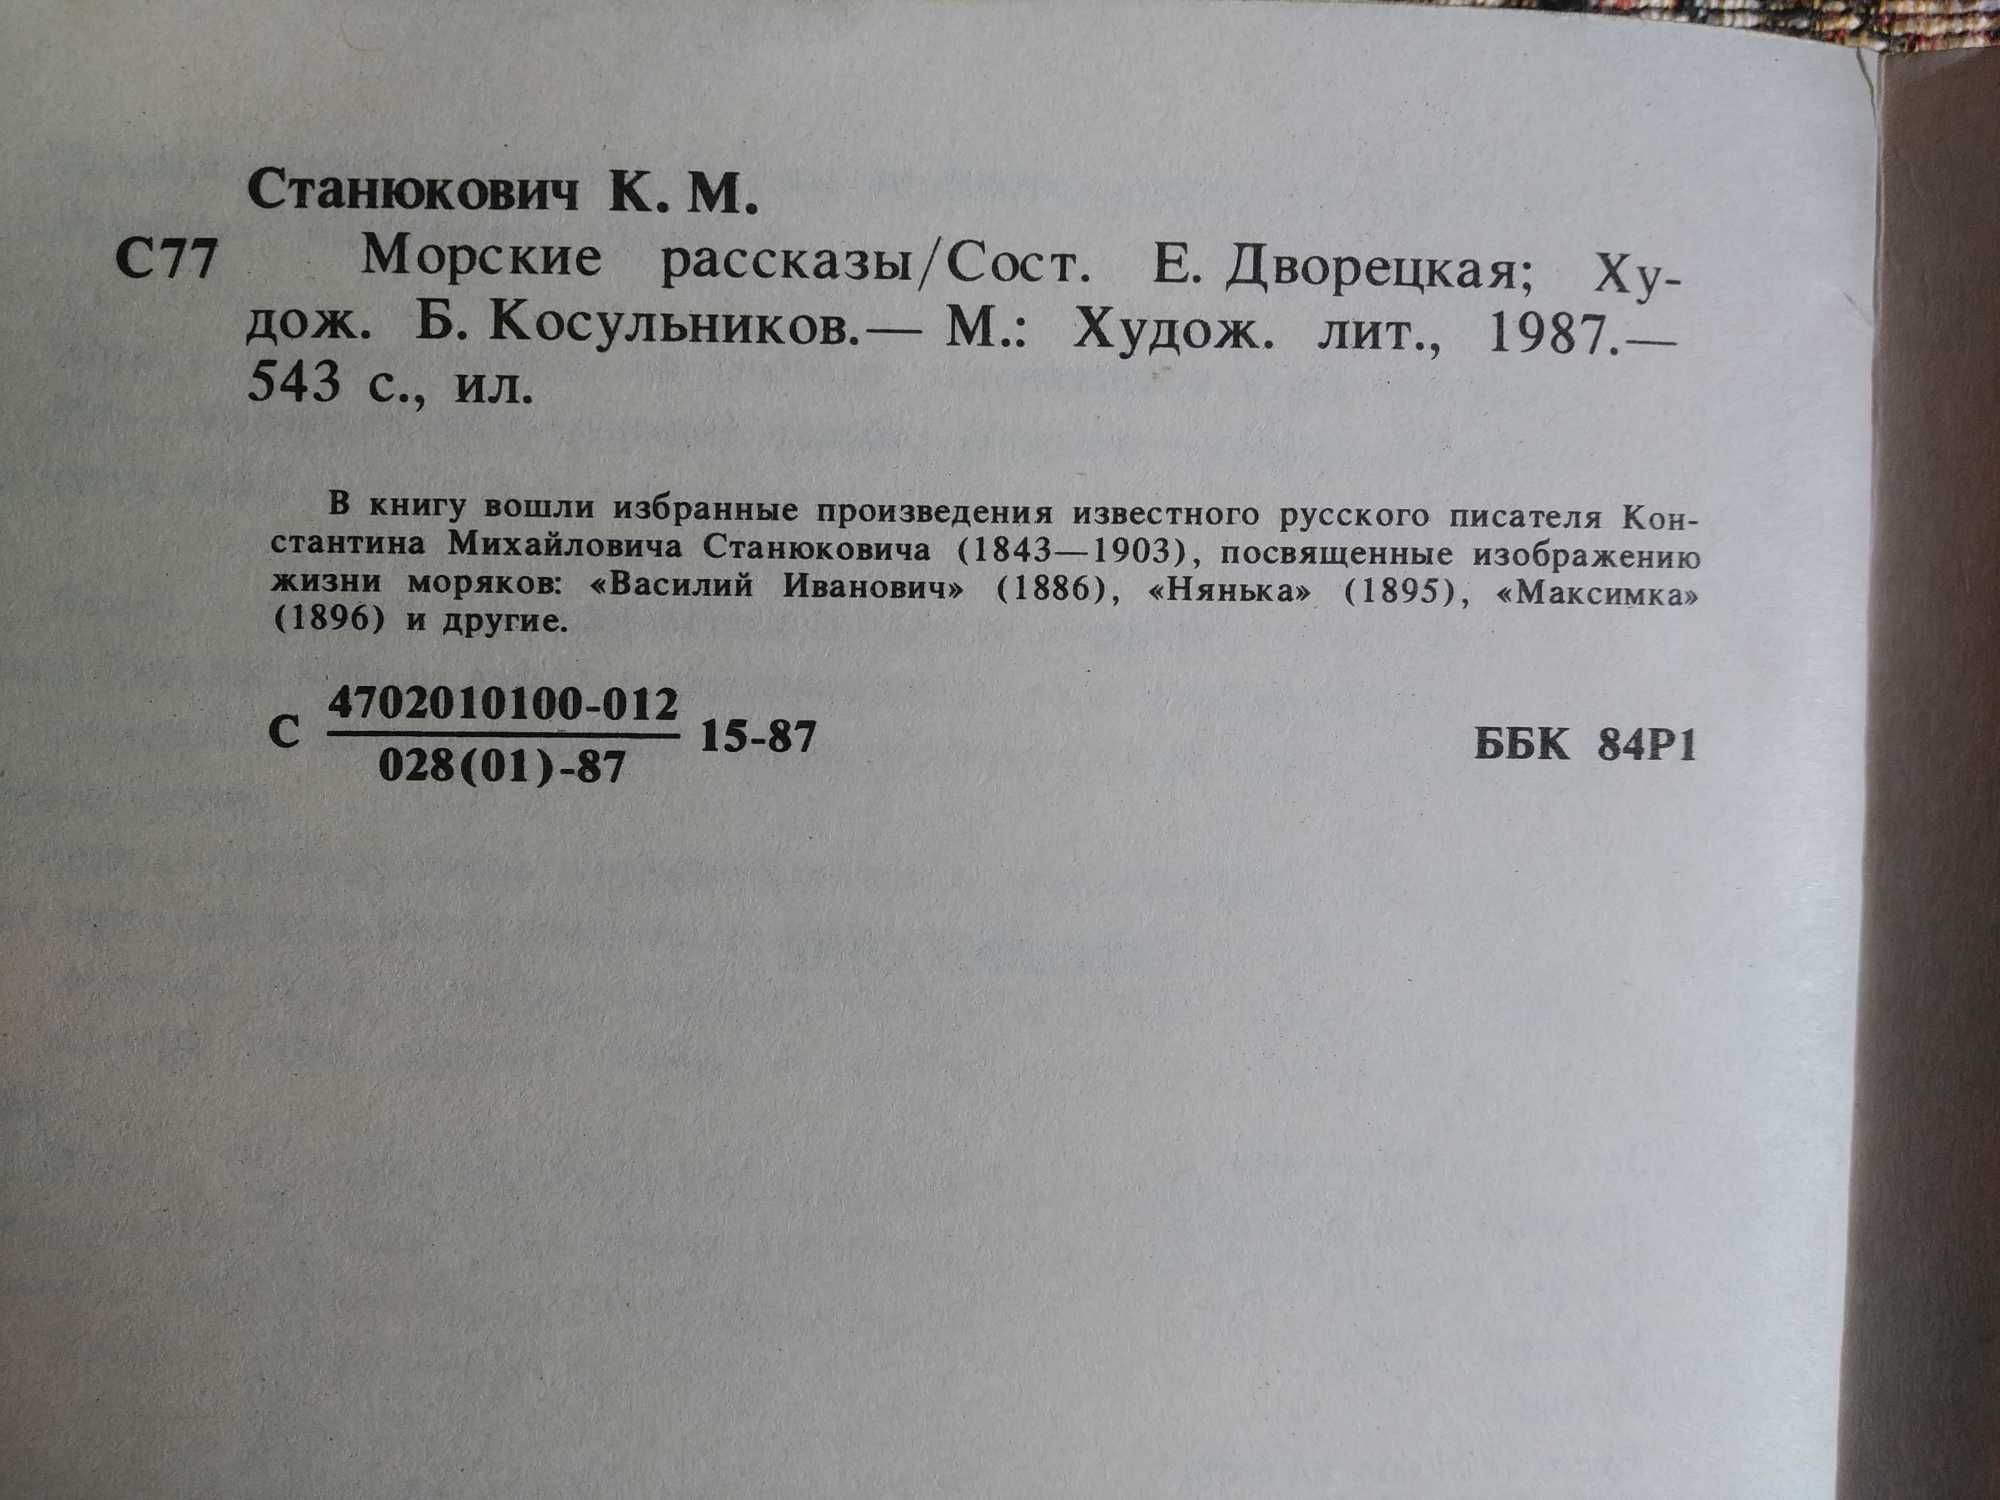 К. М. Станюкович, морские рассказы, 543 стр.